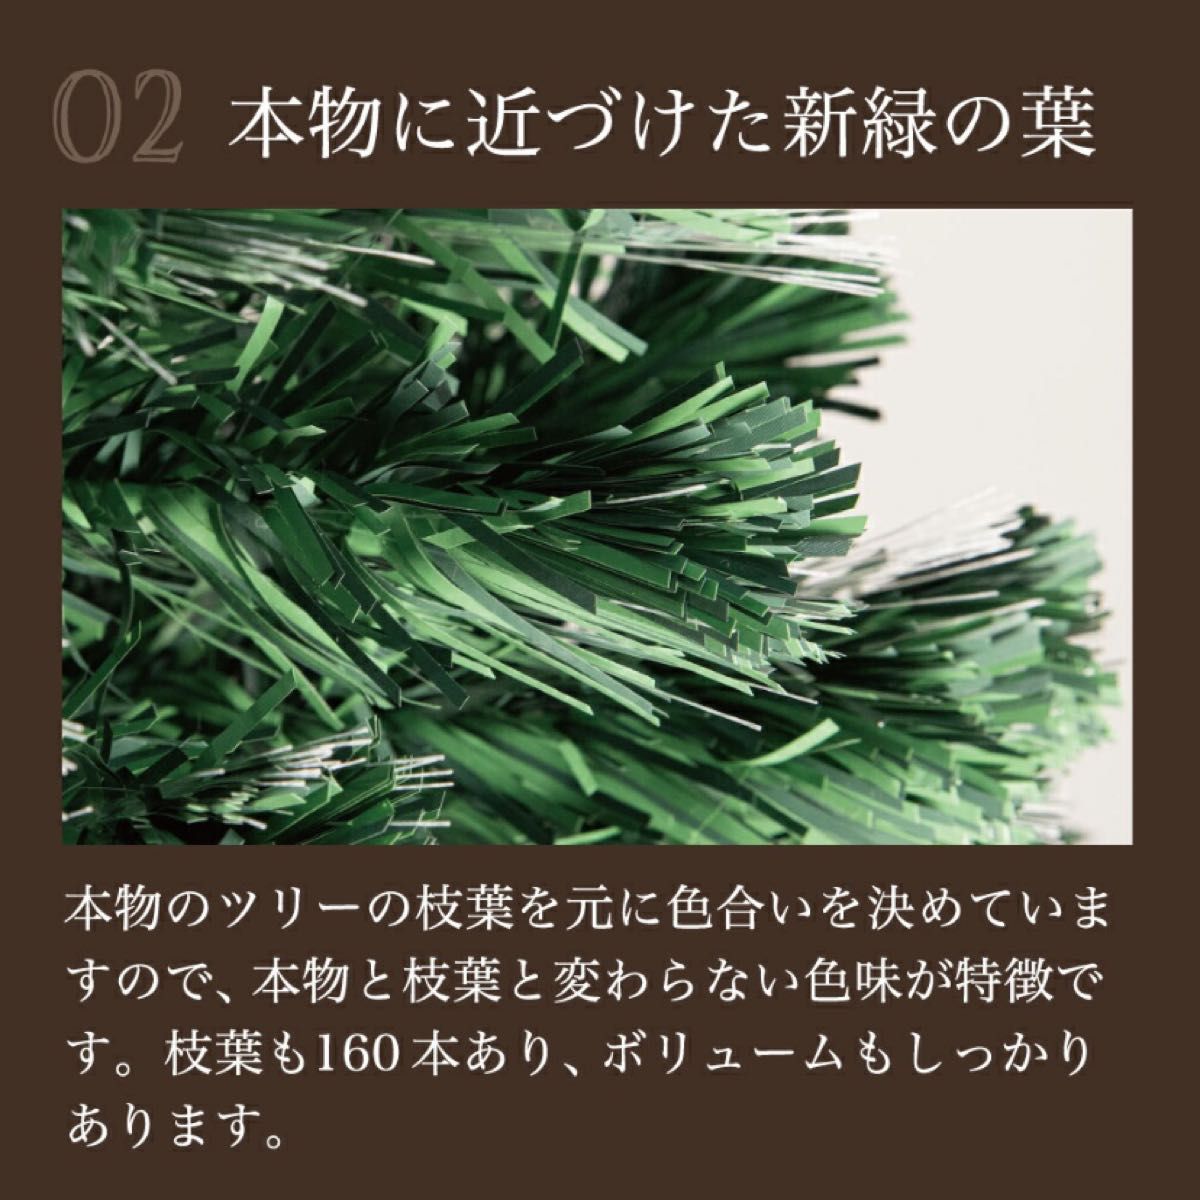 【新品】北欧クリスマスツリー『色鮮やかな光ファイバーツリー』150cm緑色タイプ